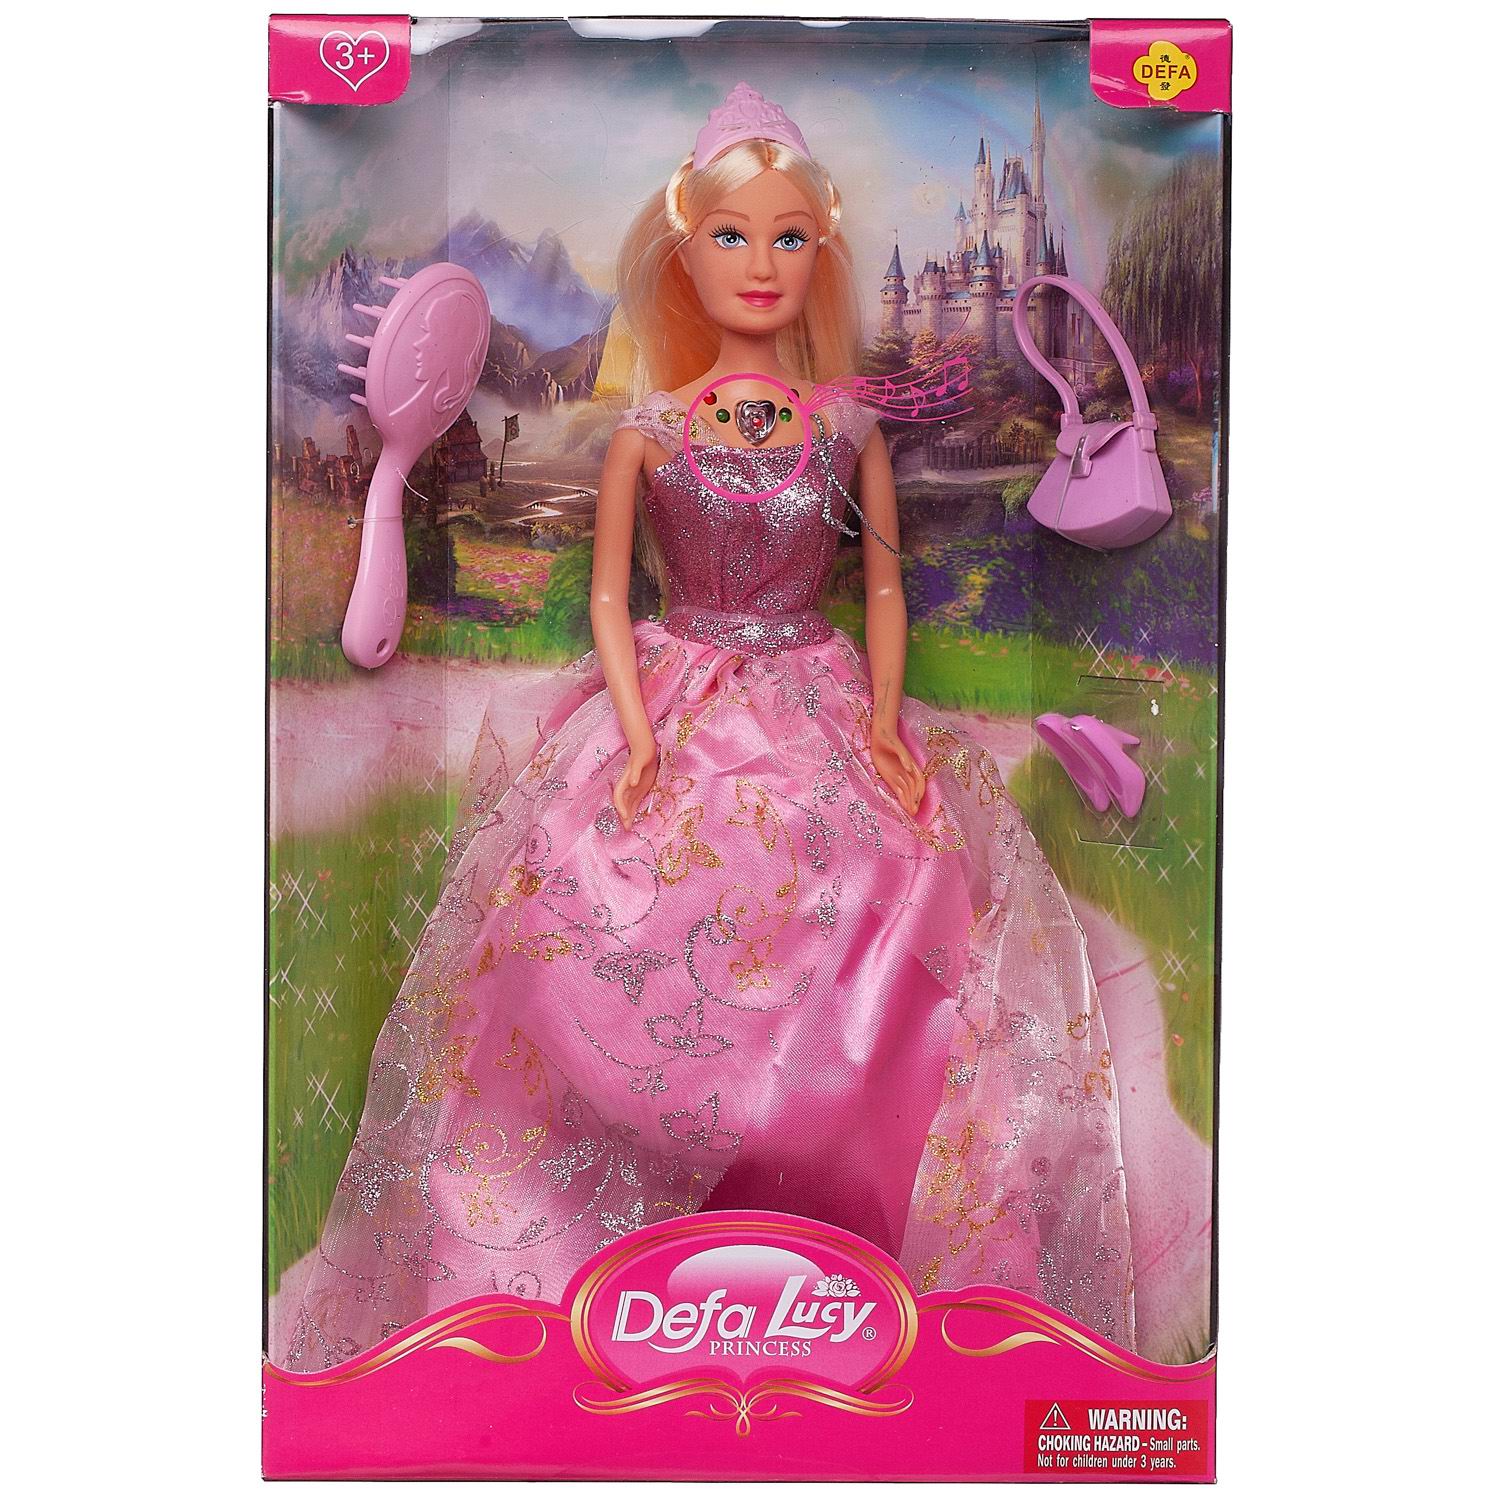 Кукла Defa Lucy Принцесса в розовом платье в наборе с игровыми предметами, 29 см кукла в наборе с аксессуарами римские каникулы 29 см mia 200669824 2